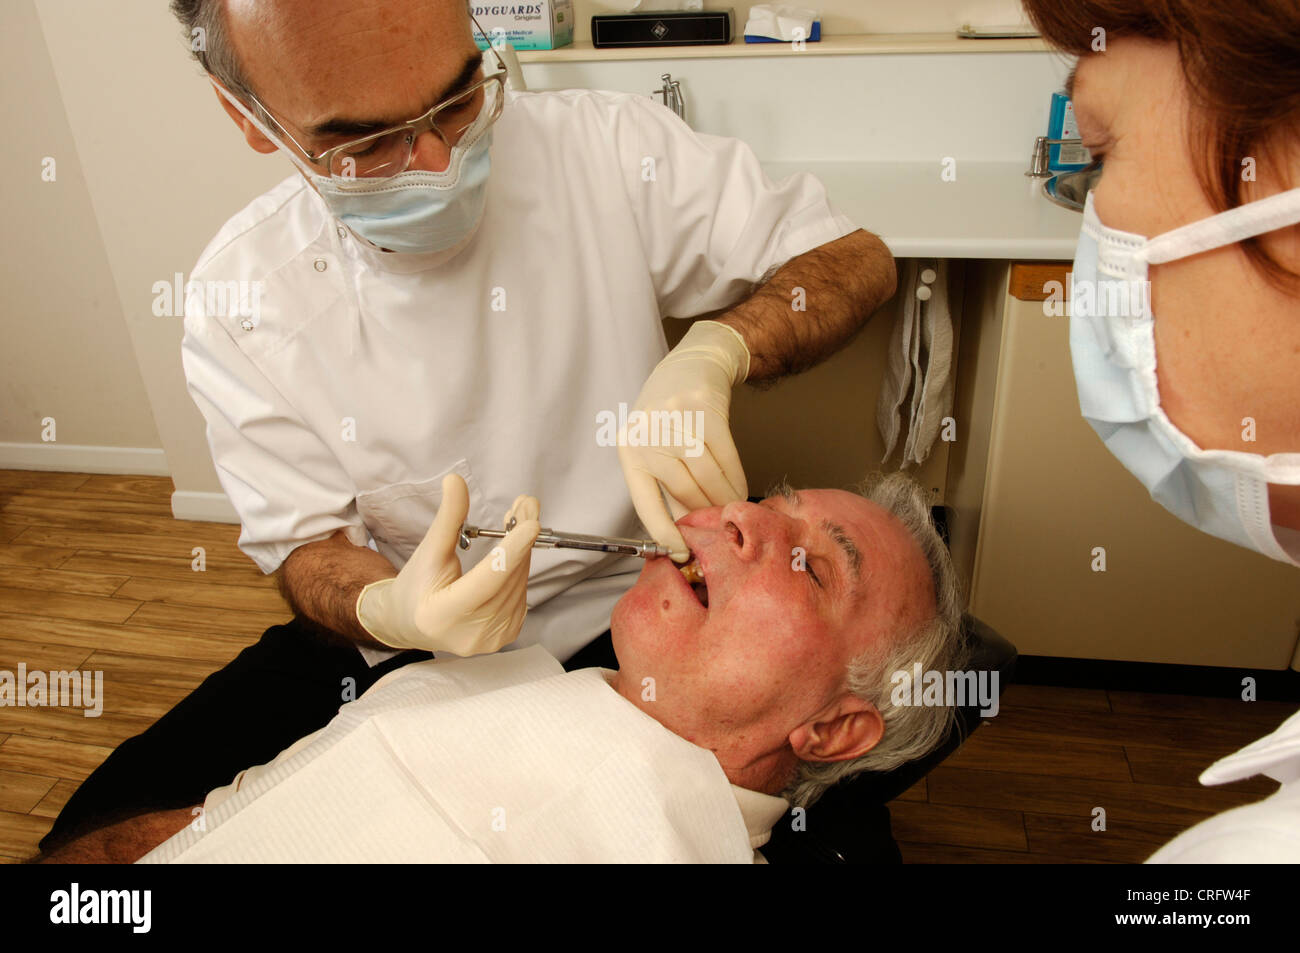 Vu par son adjoint, un dentiste injecte un anesthésique local anti douleur dans une gomme du patient pour engourdir la région avant de commencer une procédure dentaire. Banque D'Images